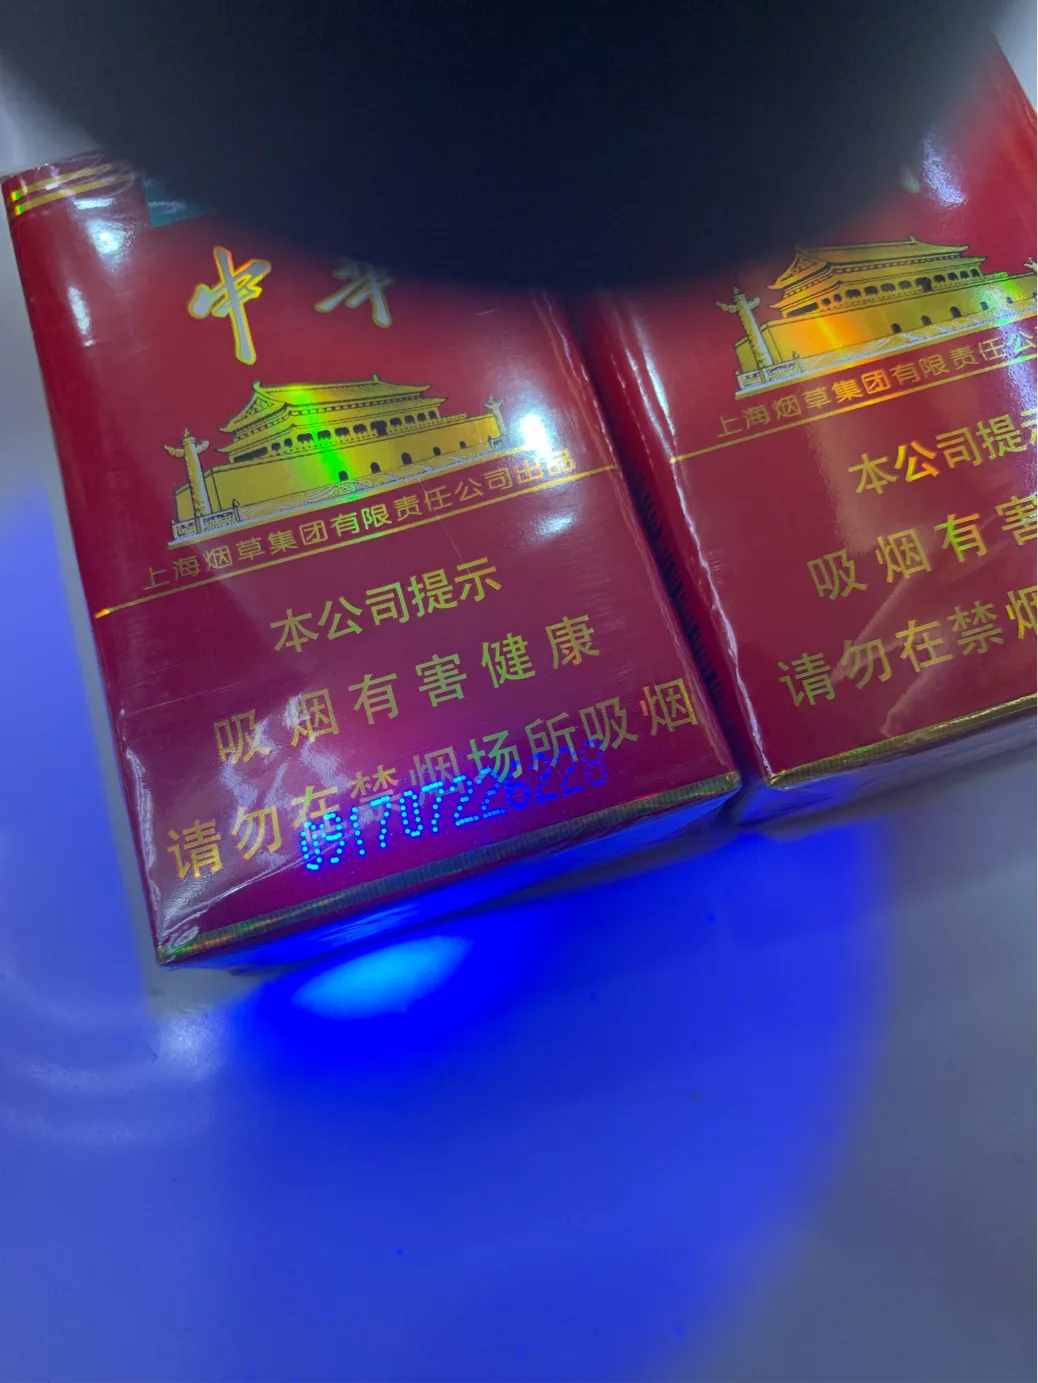 教你幾招鑒別中華香煙真假的技巧。